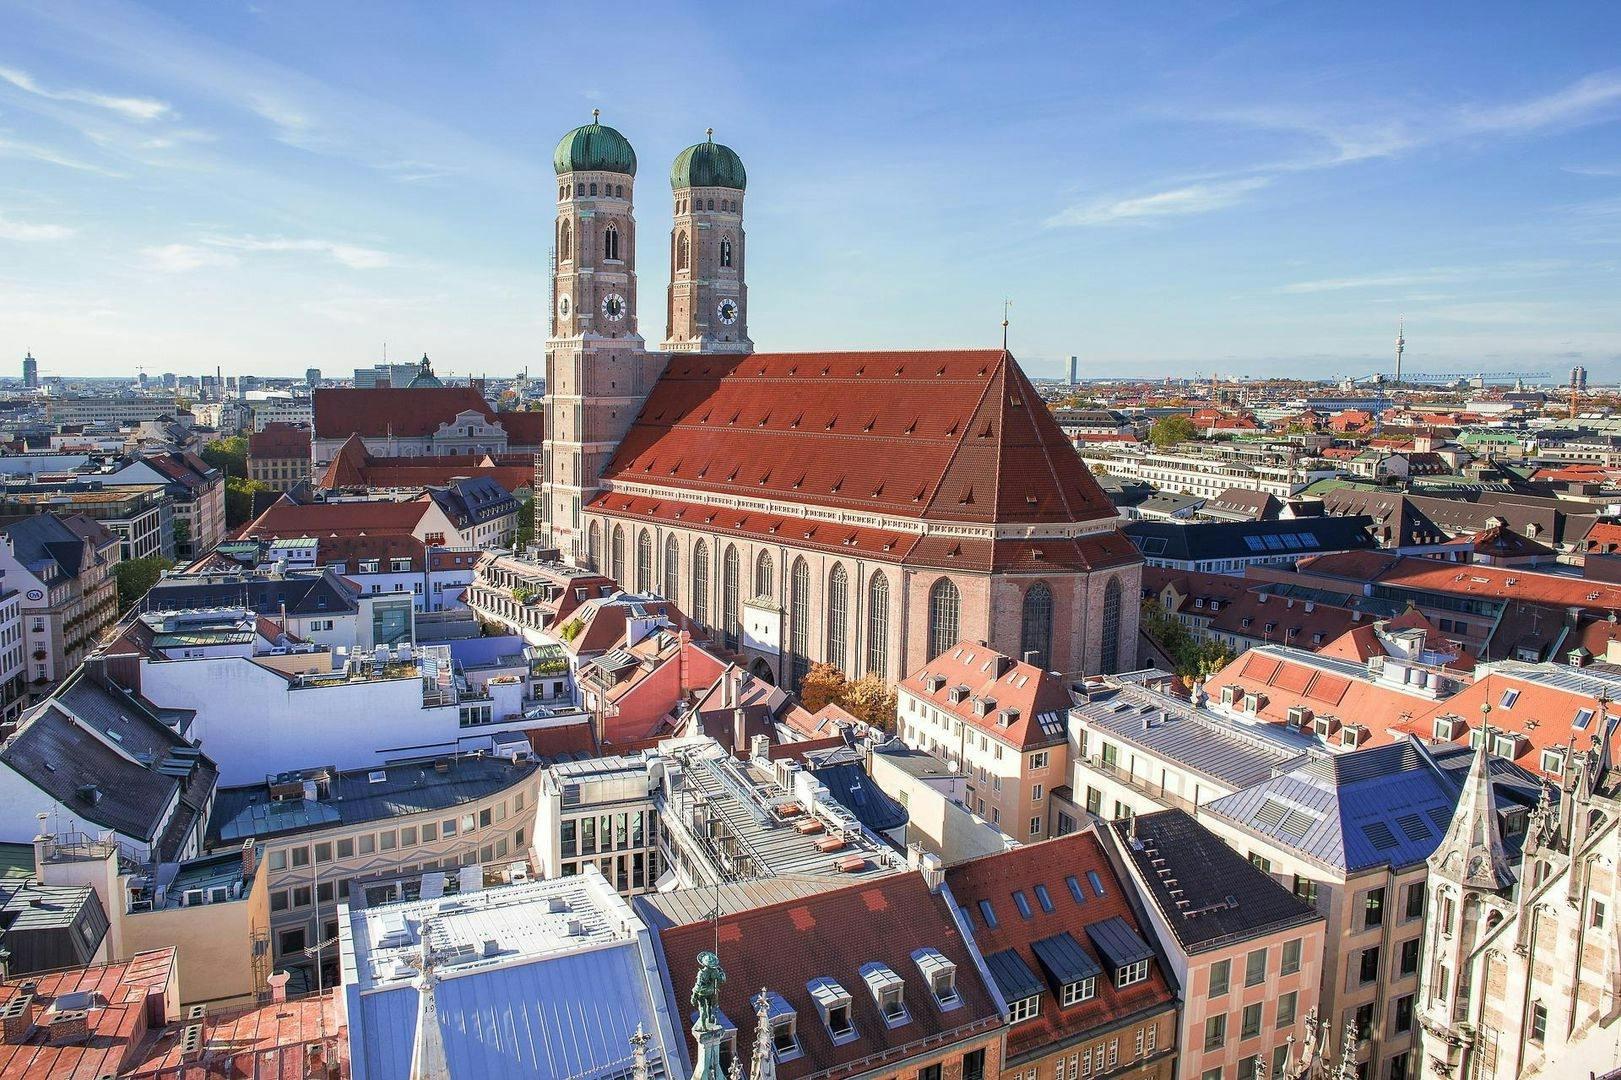 Piesza wycieczka audio po Monachium, stolicy Bawarii i piwo